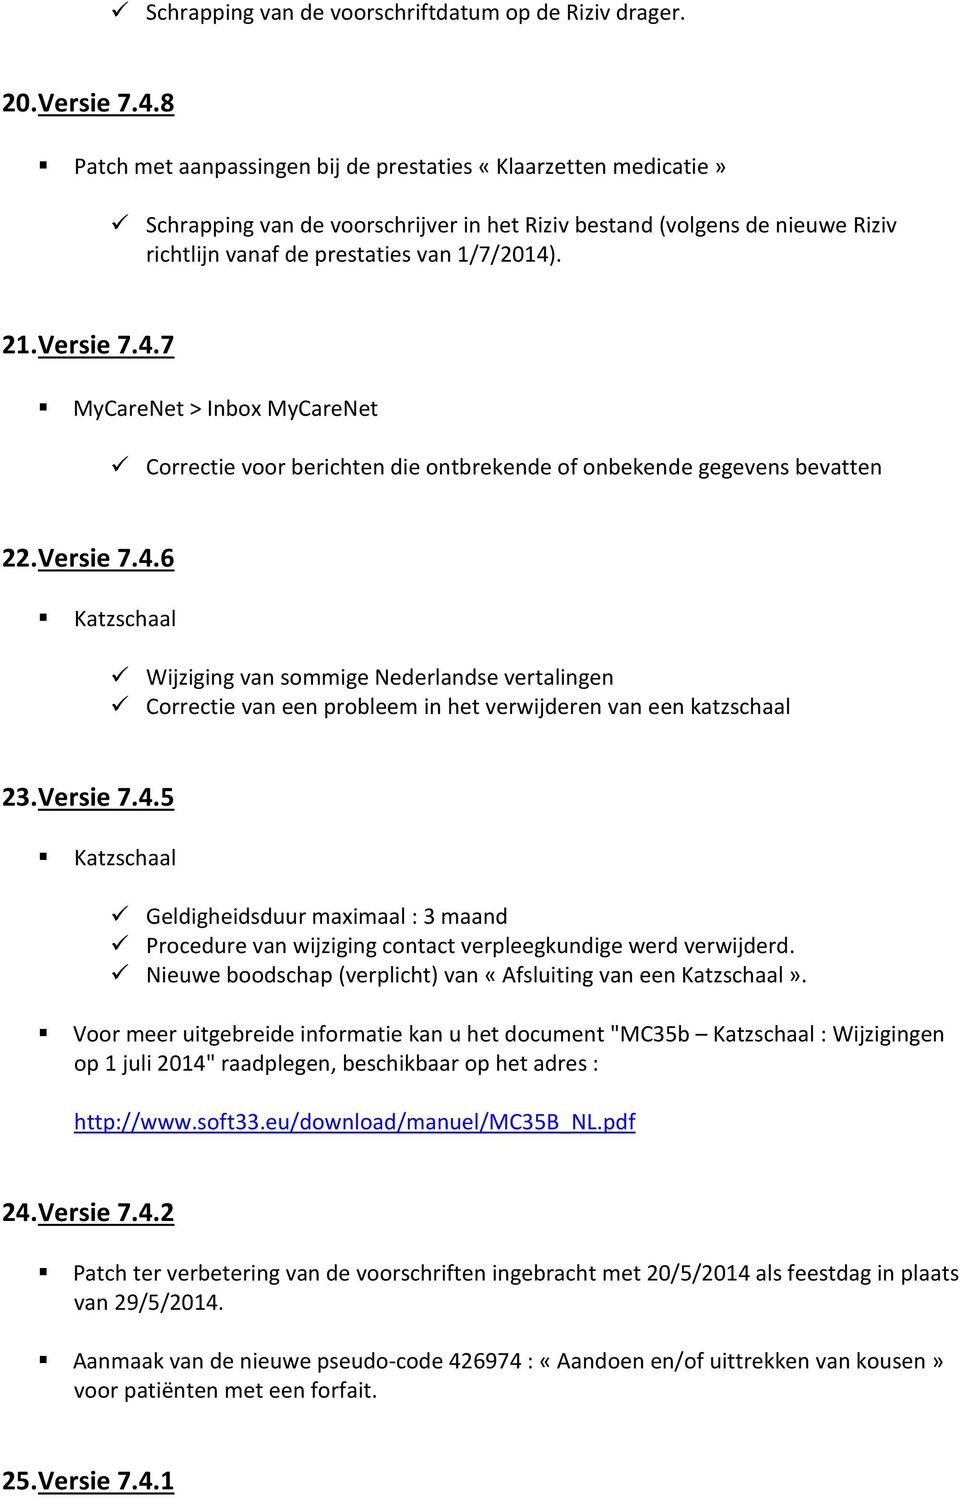 Versie 7.4.7 MyCareNet > Inbox MyCareNet Correctie voor berichten die ontbrekende of onbekende gegevens bevatten 22. Versie 7.4.6 Katzschaal Wijziging van sommige Nederlandse vertalingen Correctie van een probleem in het verwijderen van een katzschaal 23.